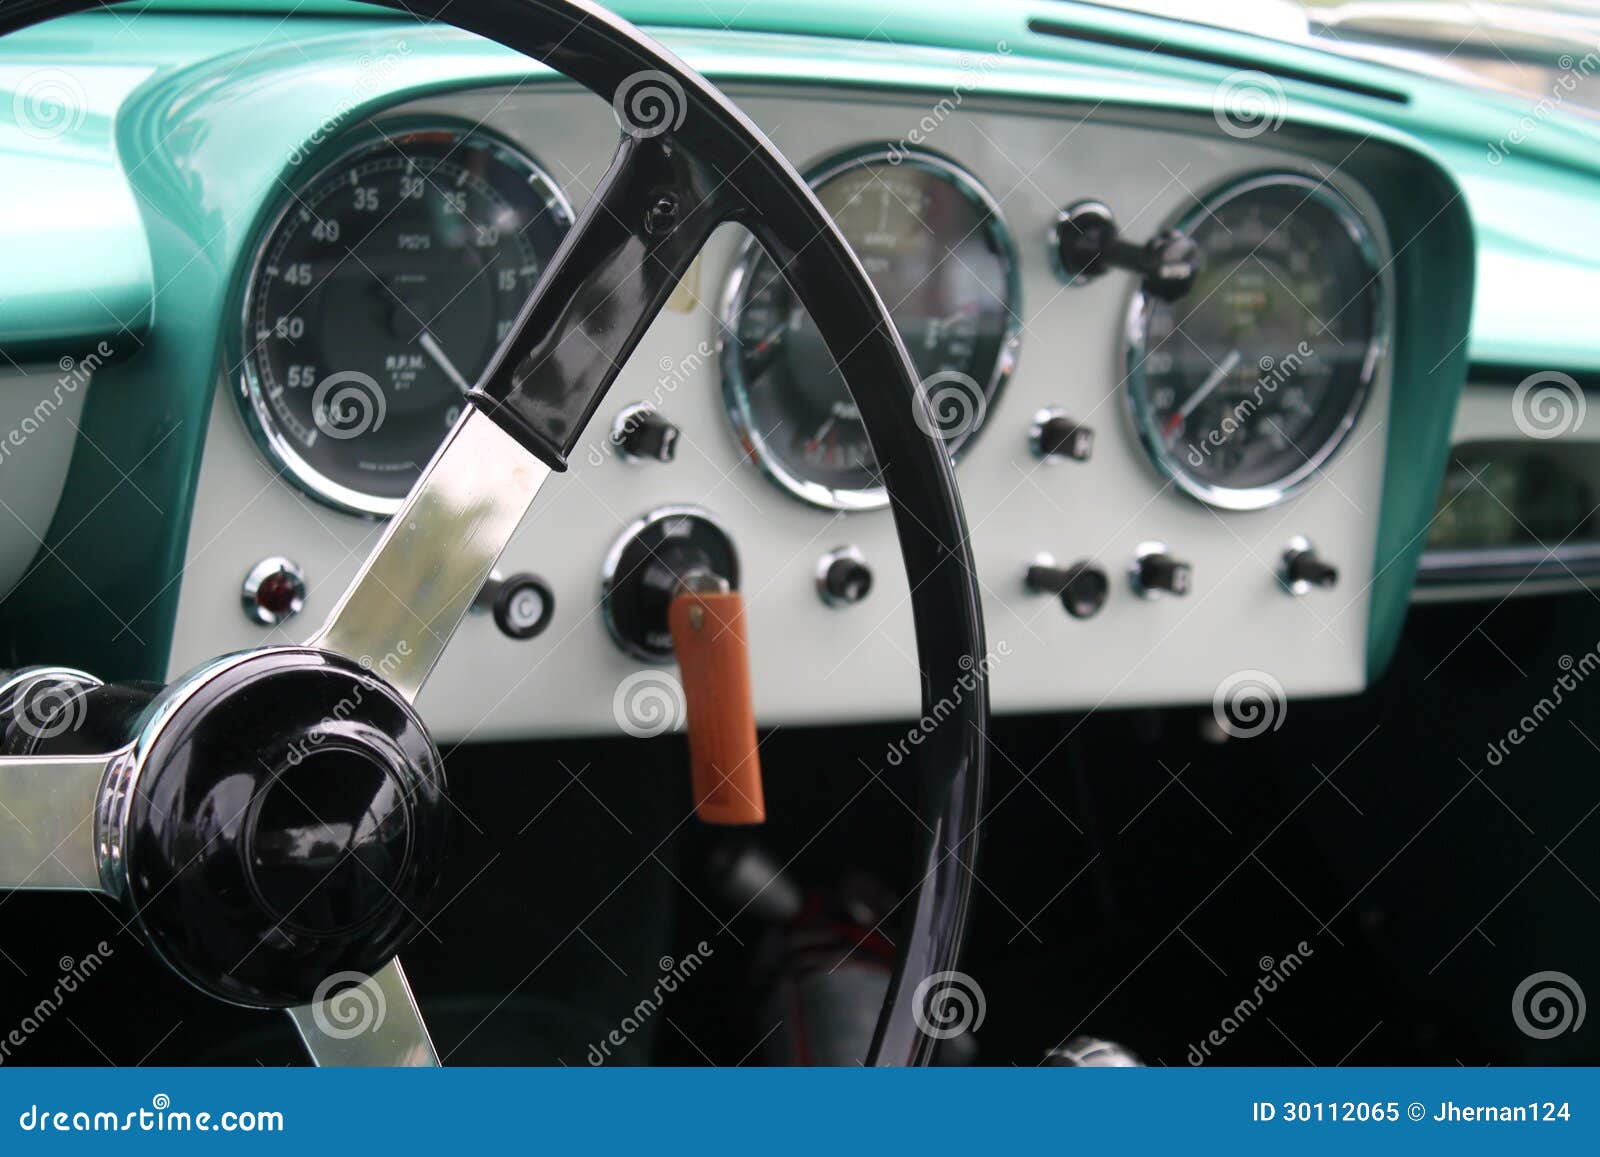 classic sports car interior dials